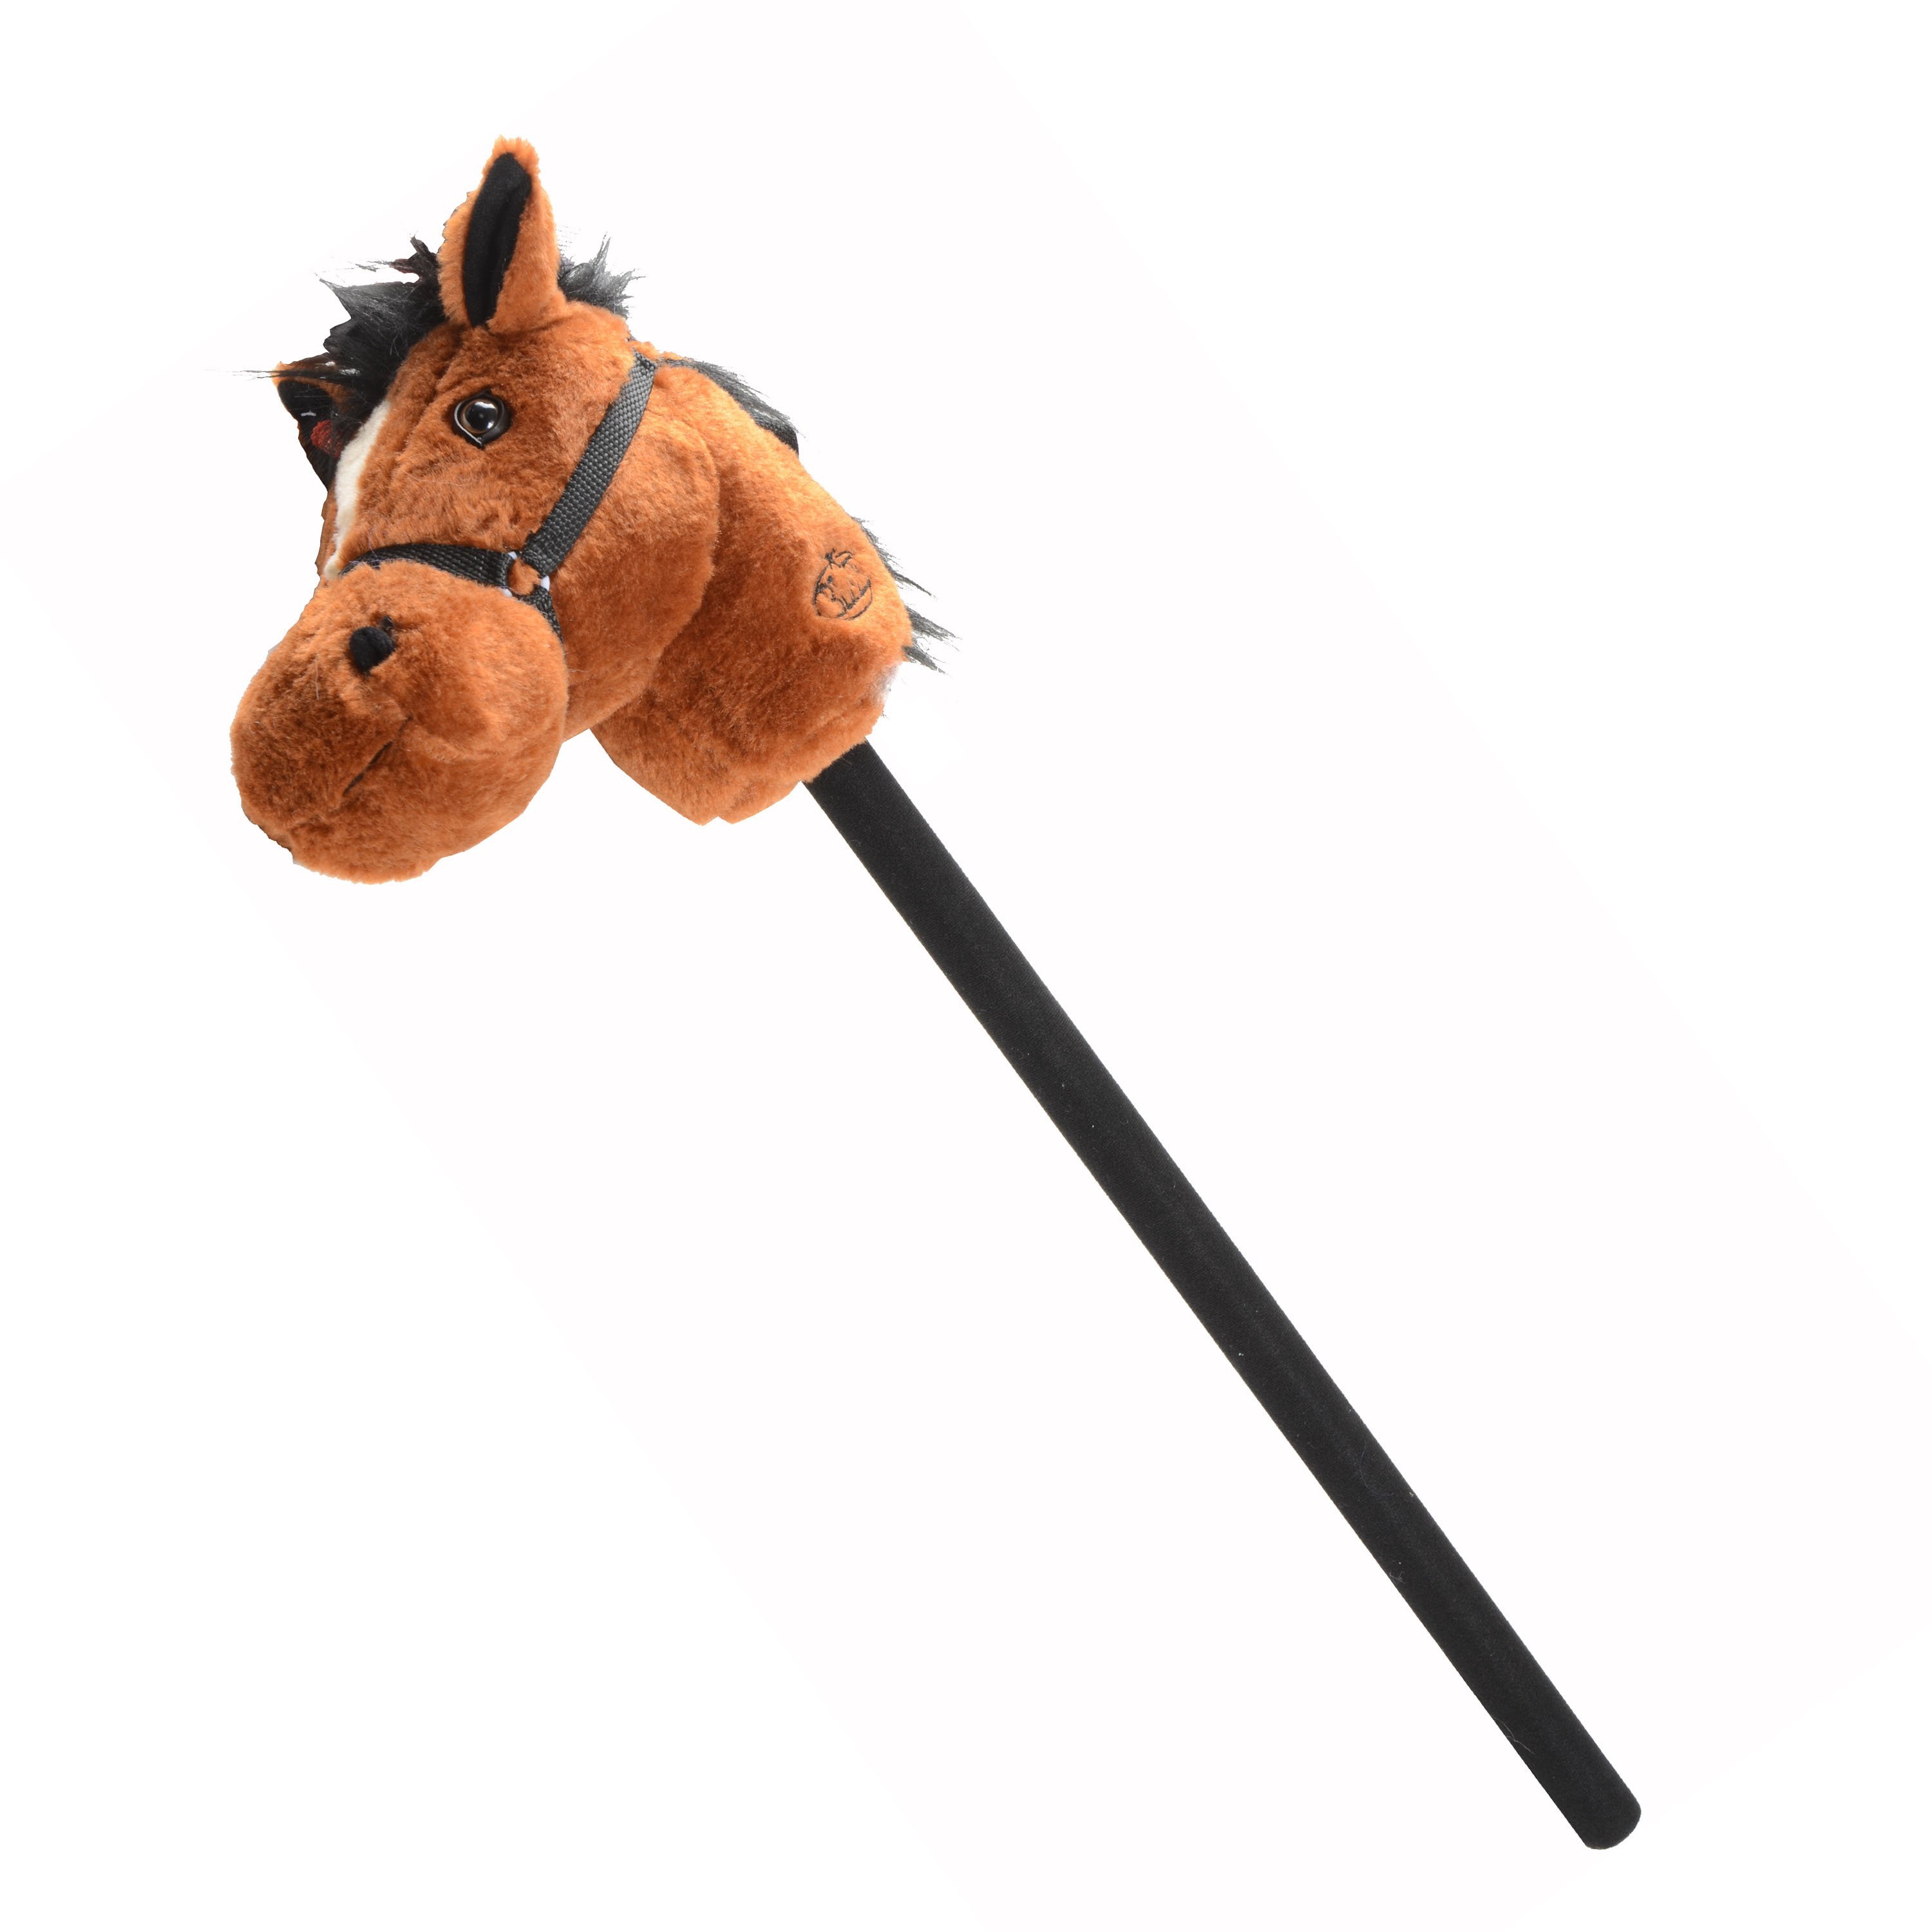 Палка с головой лошади как называется. Лошадка на палочке игрушка. Лошадка на палке. Игрушка голова лошади на палке. Конь на палочке.